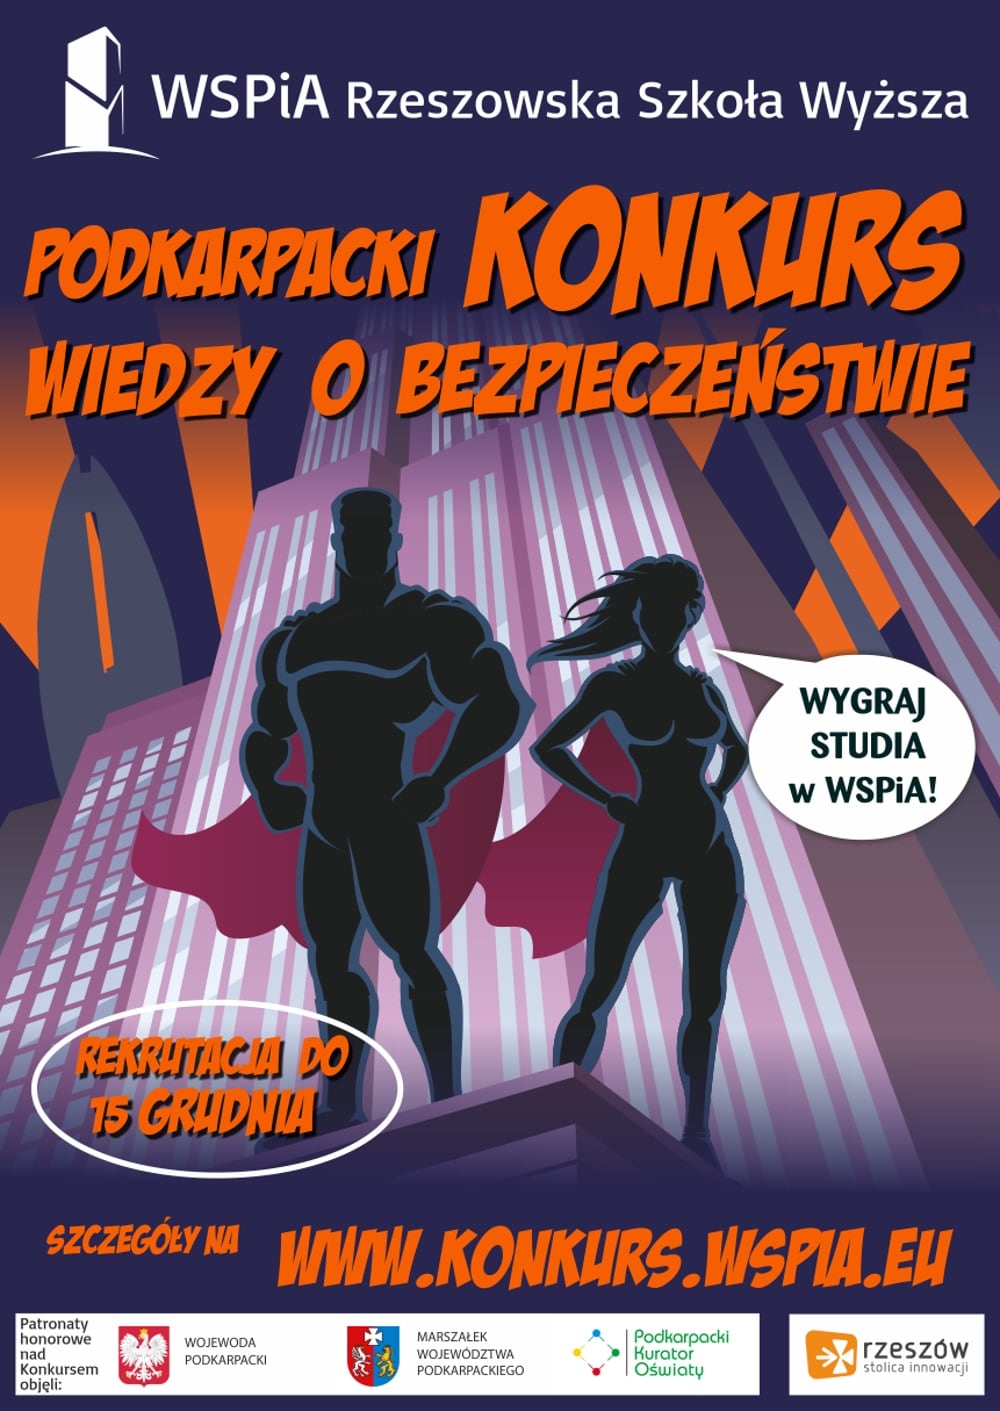 Konkurs zorganizowany jest przez WSPiA Rzeszowsk Szko Wysz.